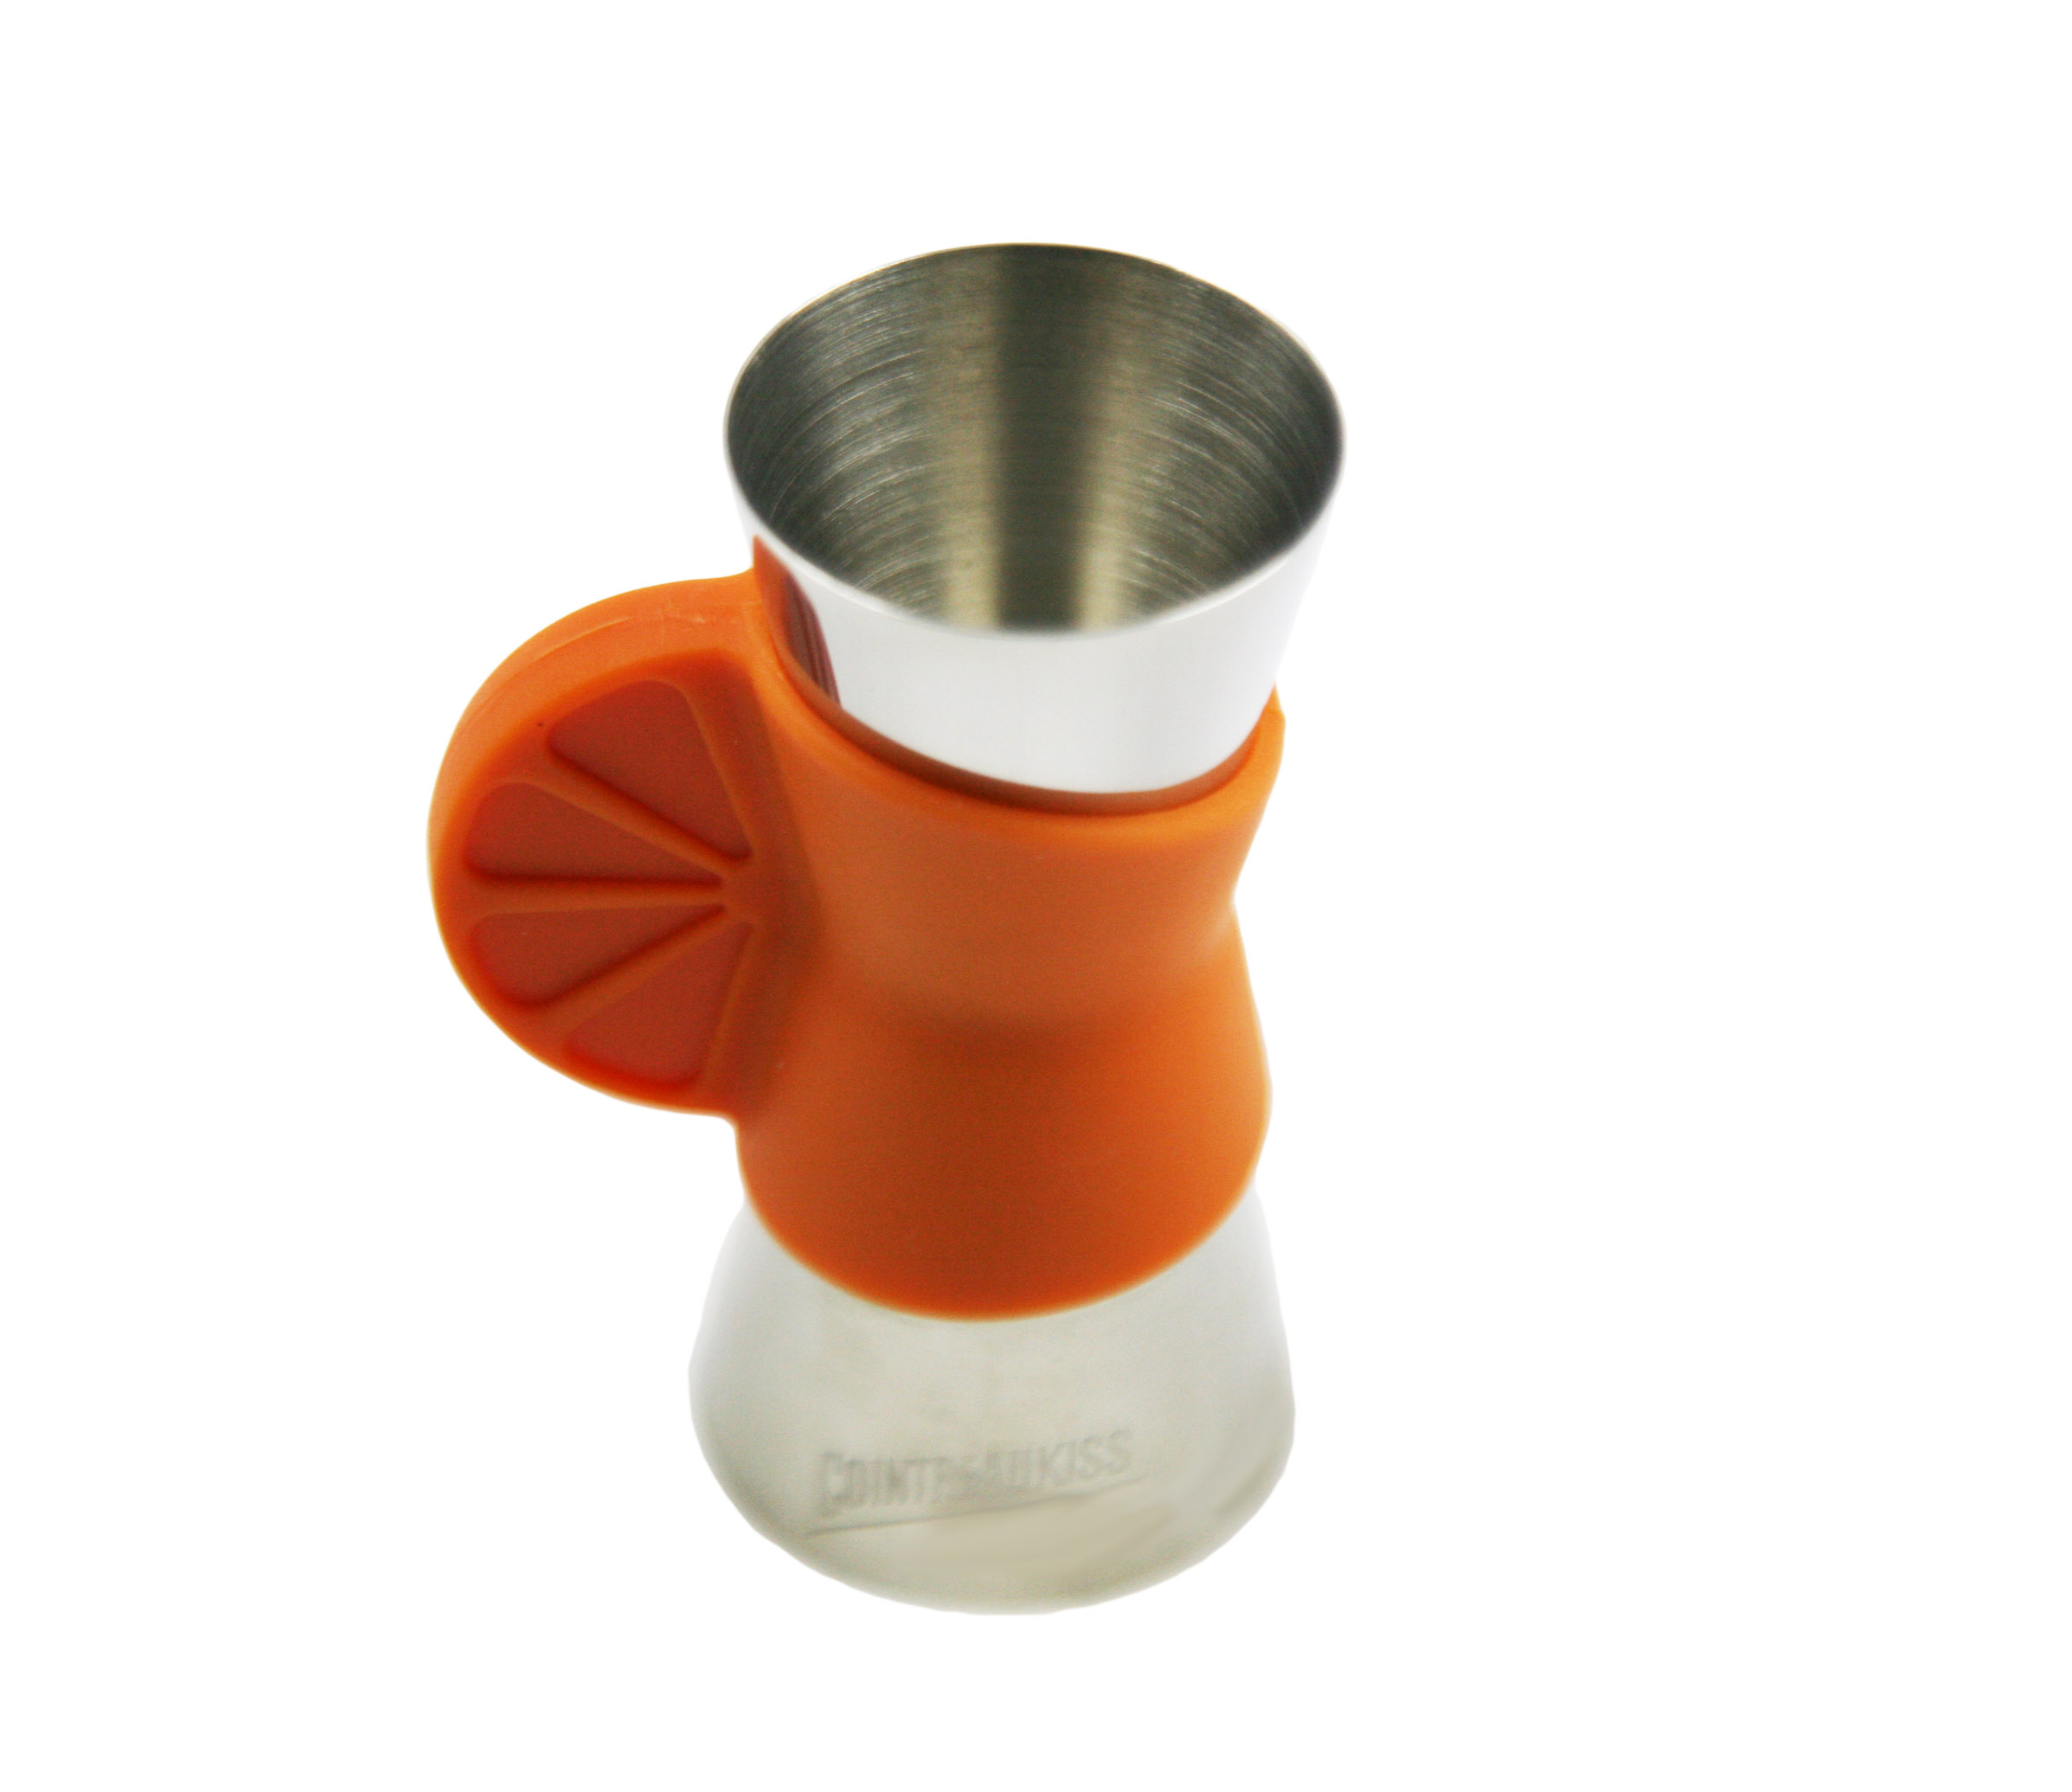 Nuovo design impugnatura arancione Durable Bar Tazza di misurazione in acciaio inox jigger Bartools EB-T21